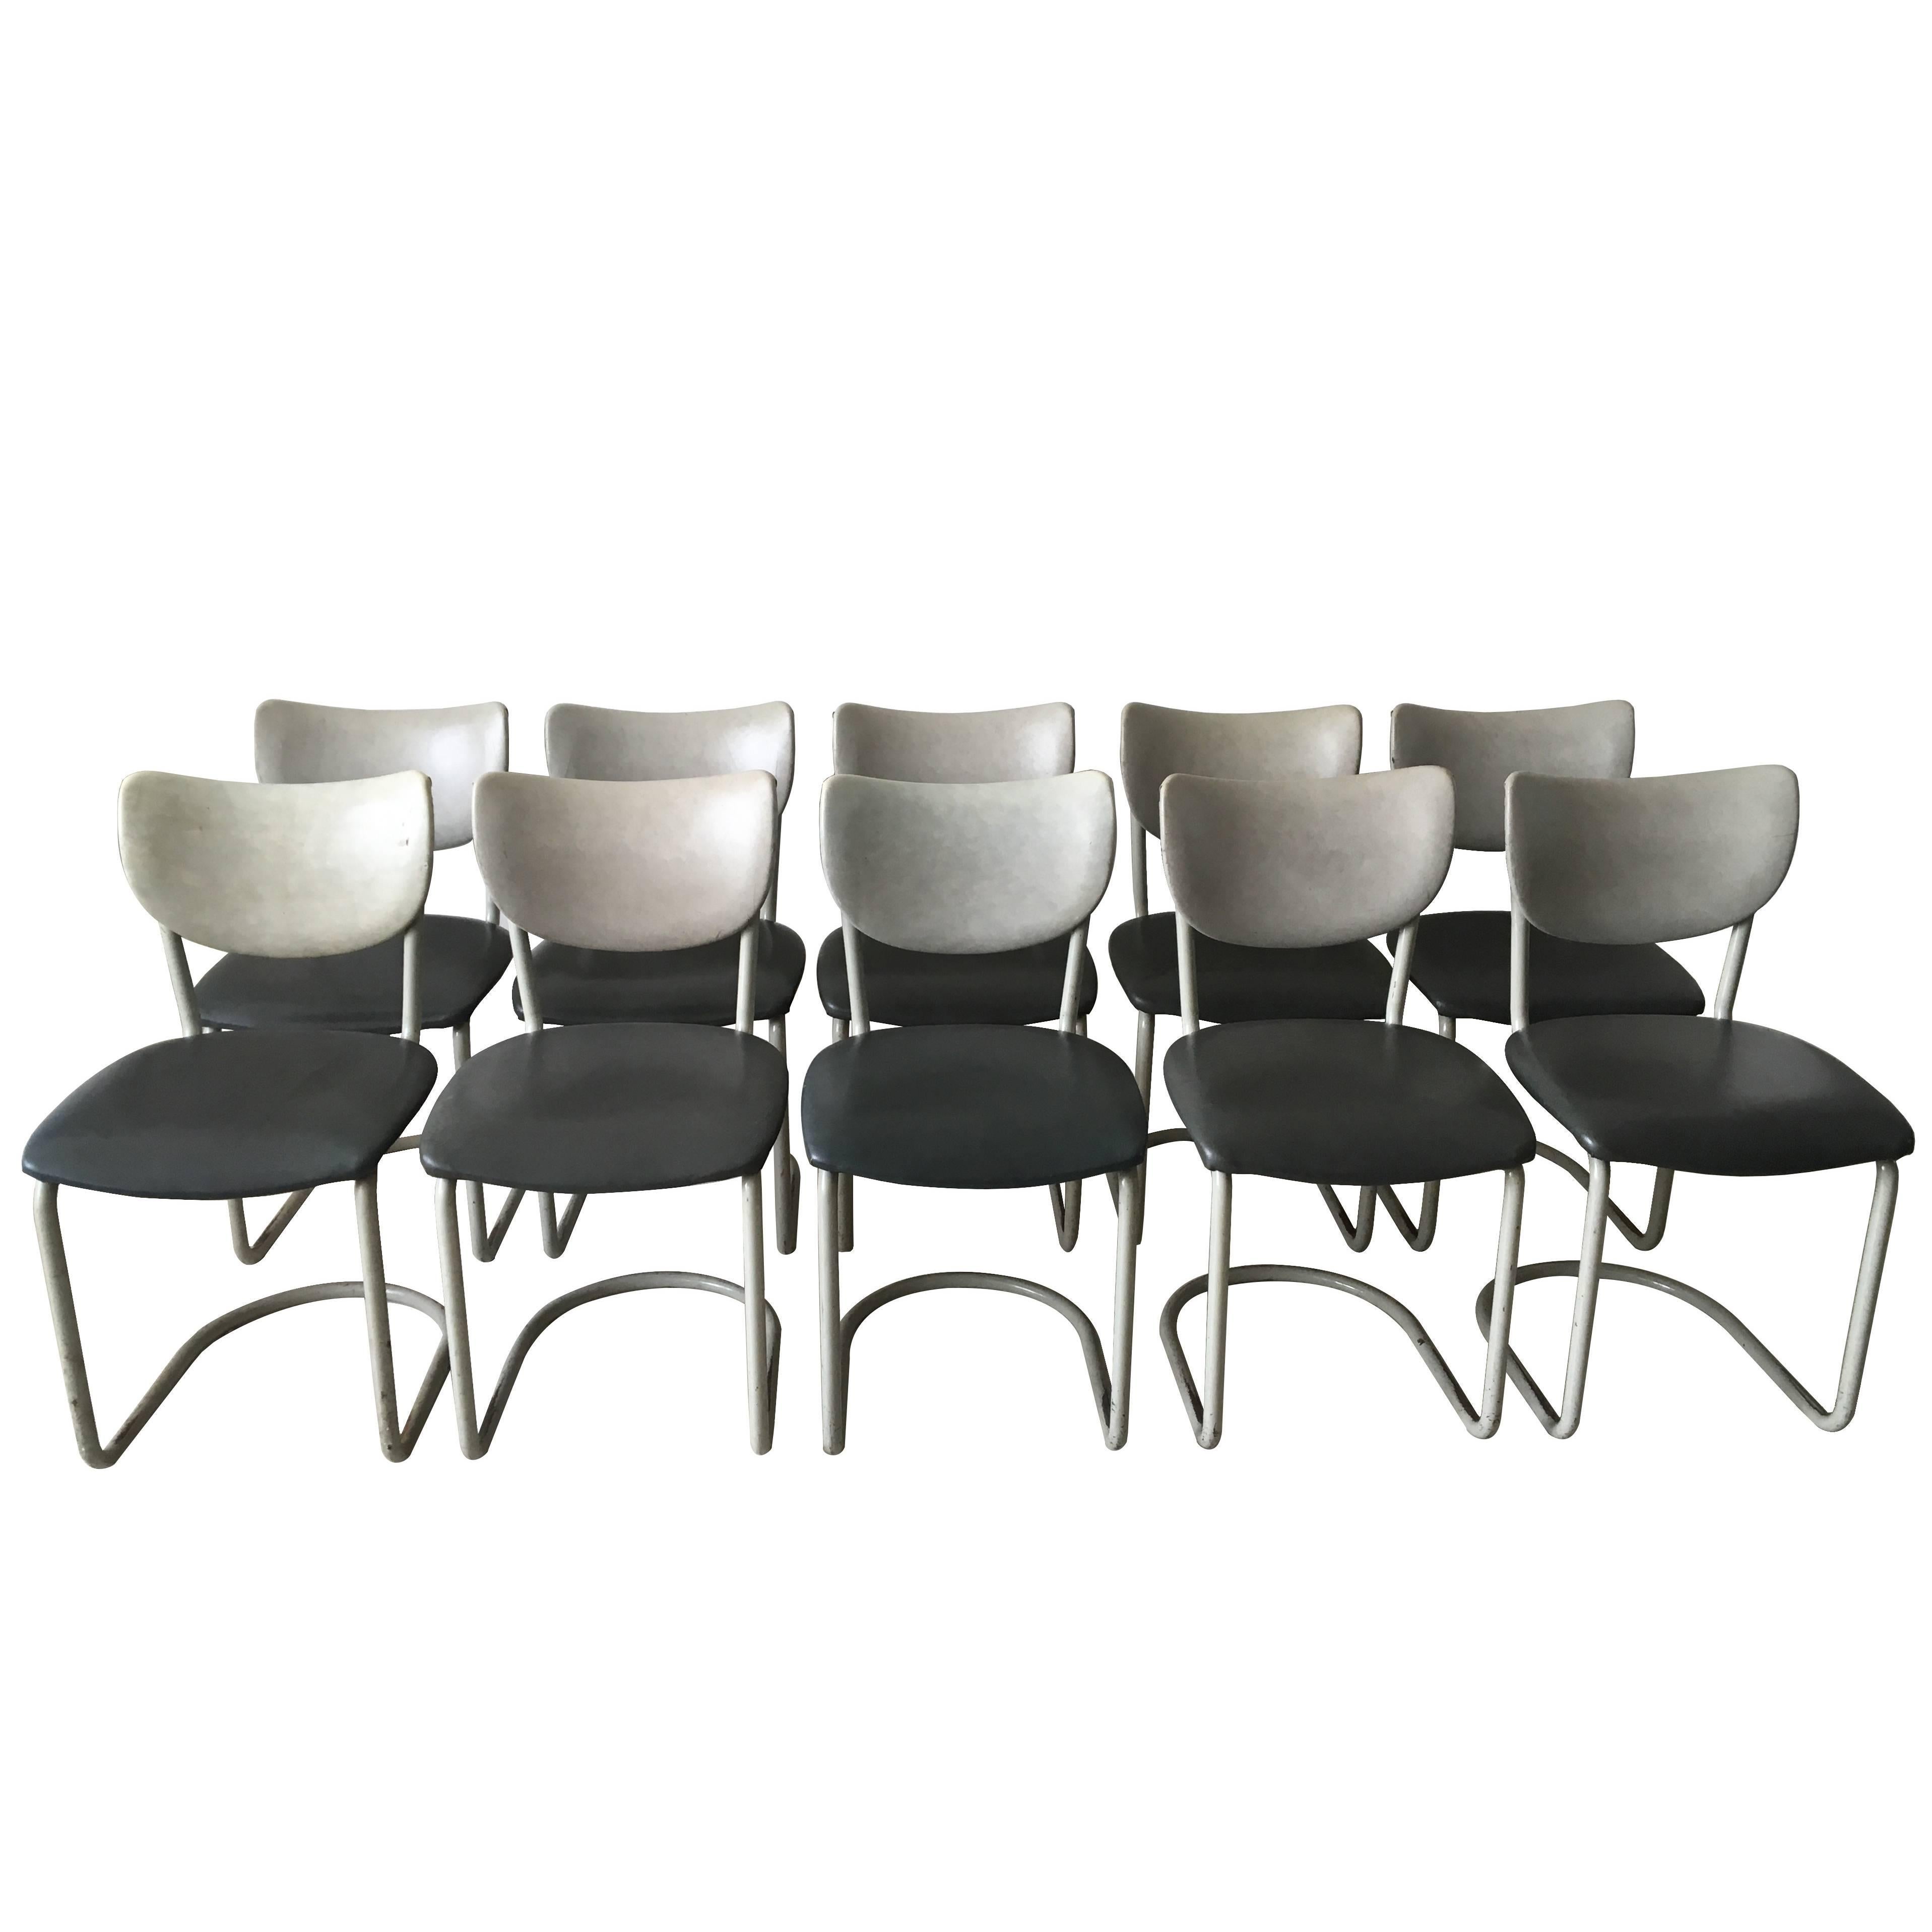 Ensemble de 10 chaises Gebroeders de Wit du milieu du siècle dernier, pour De Wit Schiedam, modèle 2011